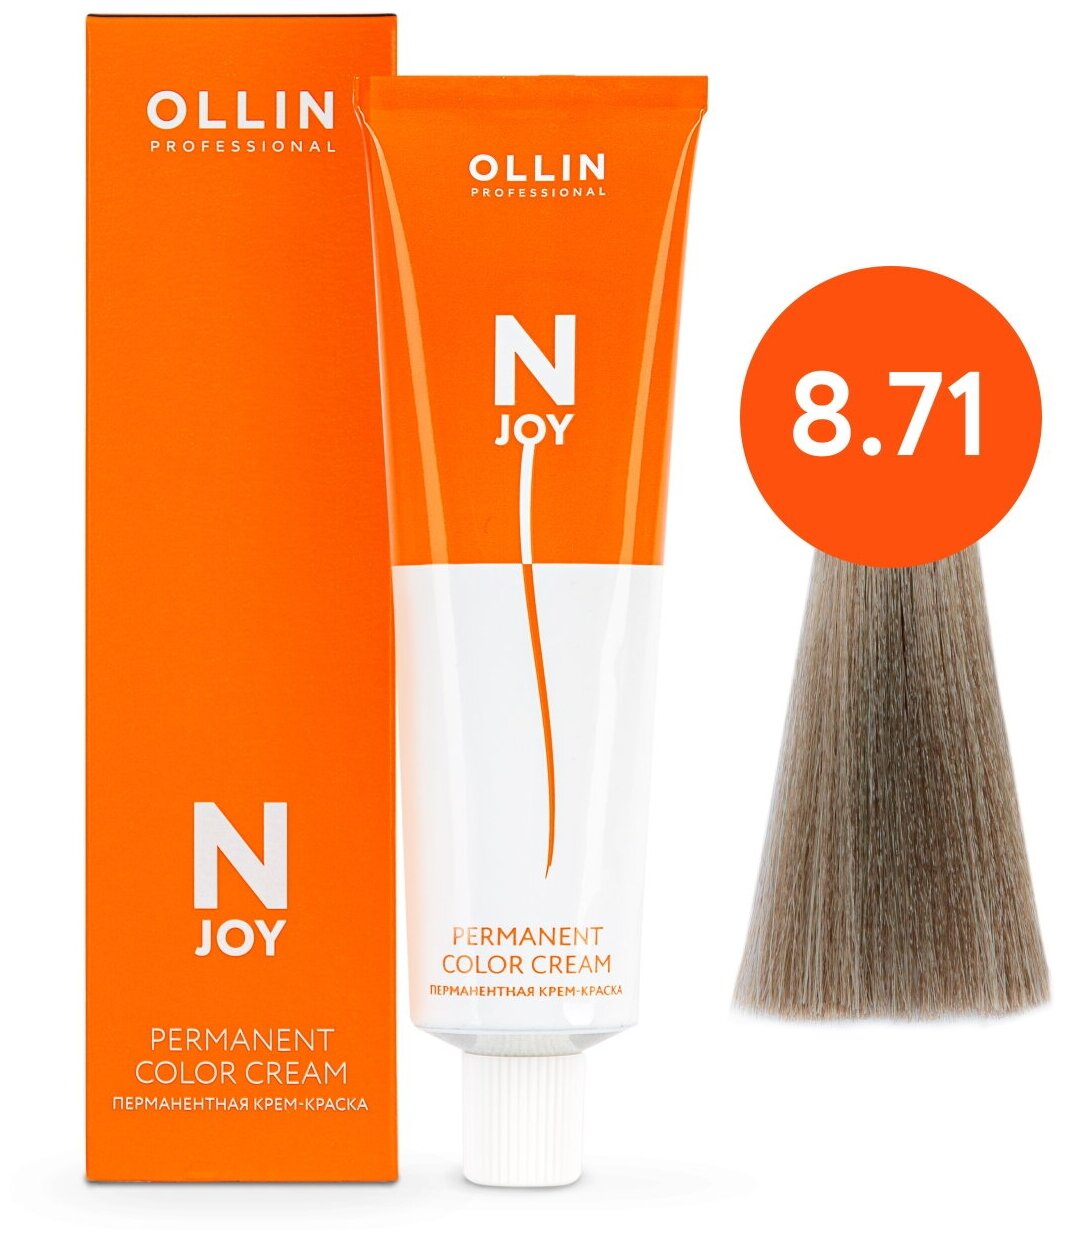 Крем-краска N-JOY для окрашивания волос OLLIN PROFESSIONAL 8/71 светло-русый коричнево-пепельный 100 мл